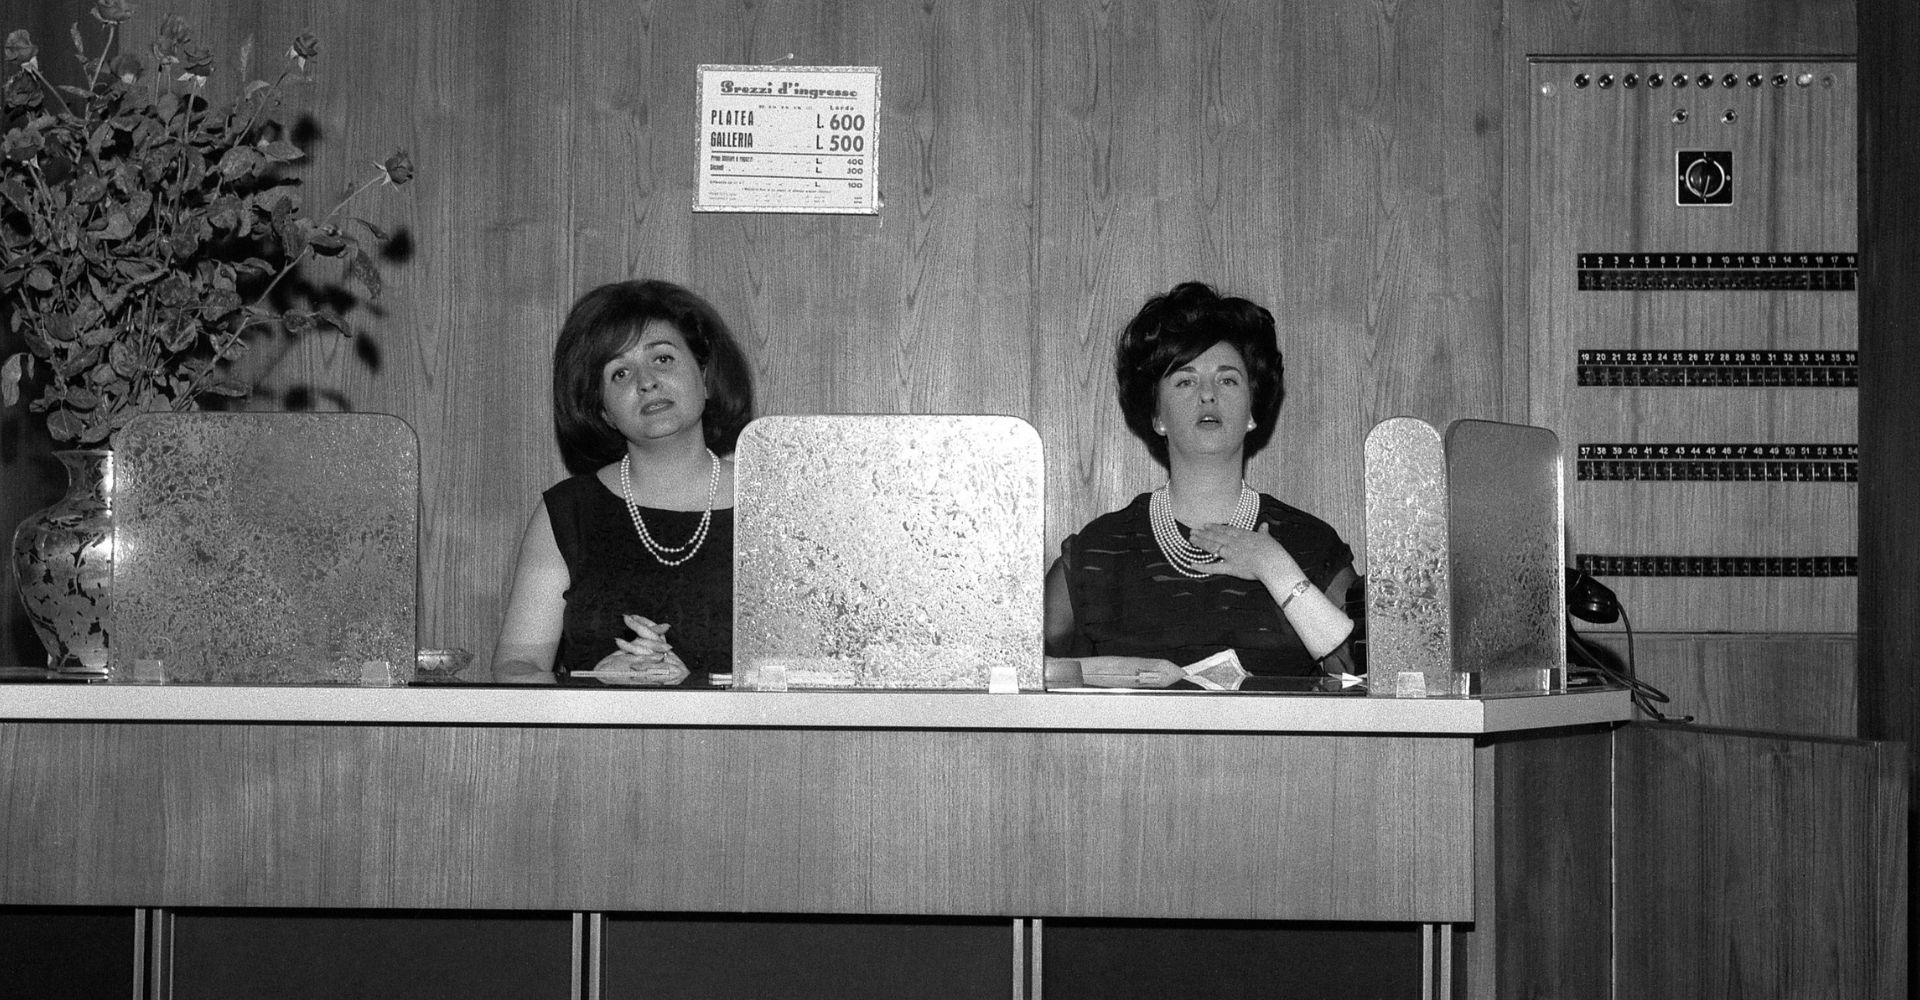 Le cassiere Adelaide Marini e Ninni Deveronico nel giorno dell’inaugurazione, 31 maggio 1963.